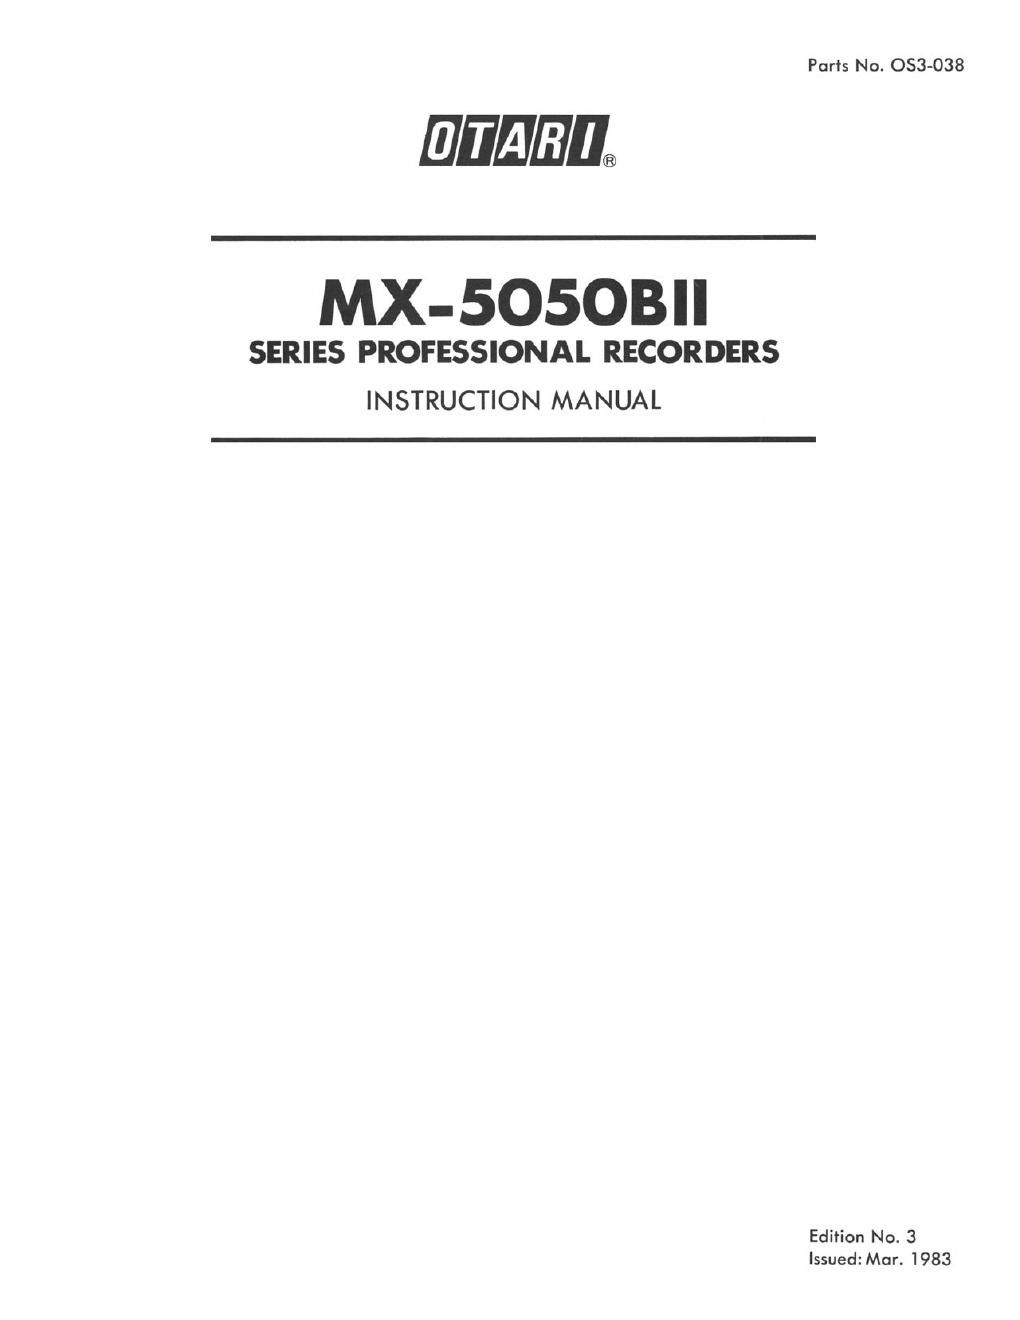 otari mx 5050 b mk2 owners manual